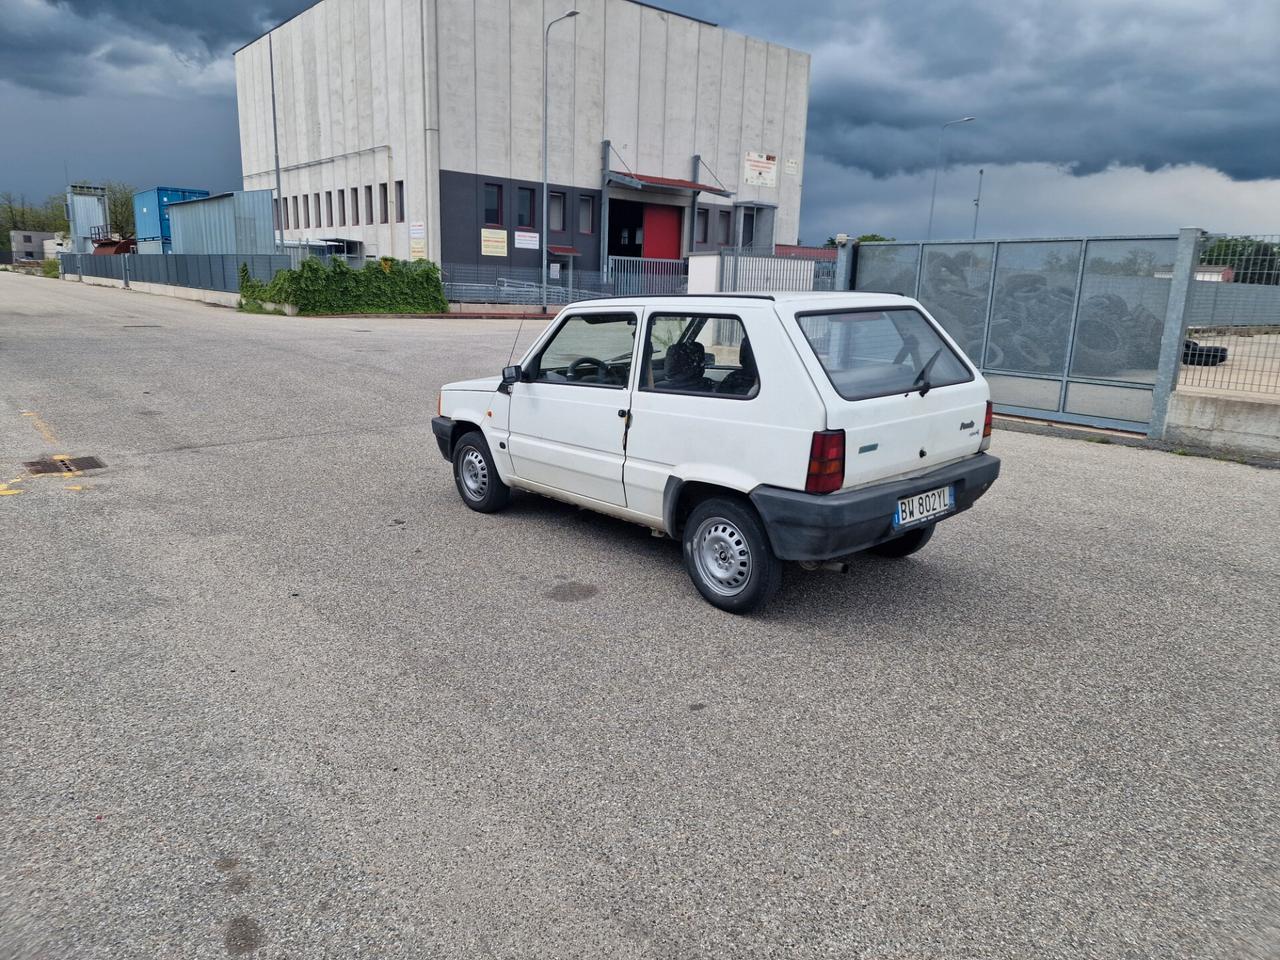 Fiat Panda 1100 i.e. cat Young